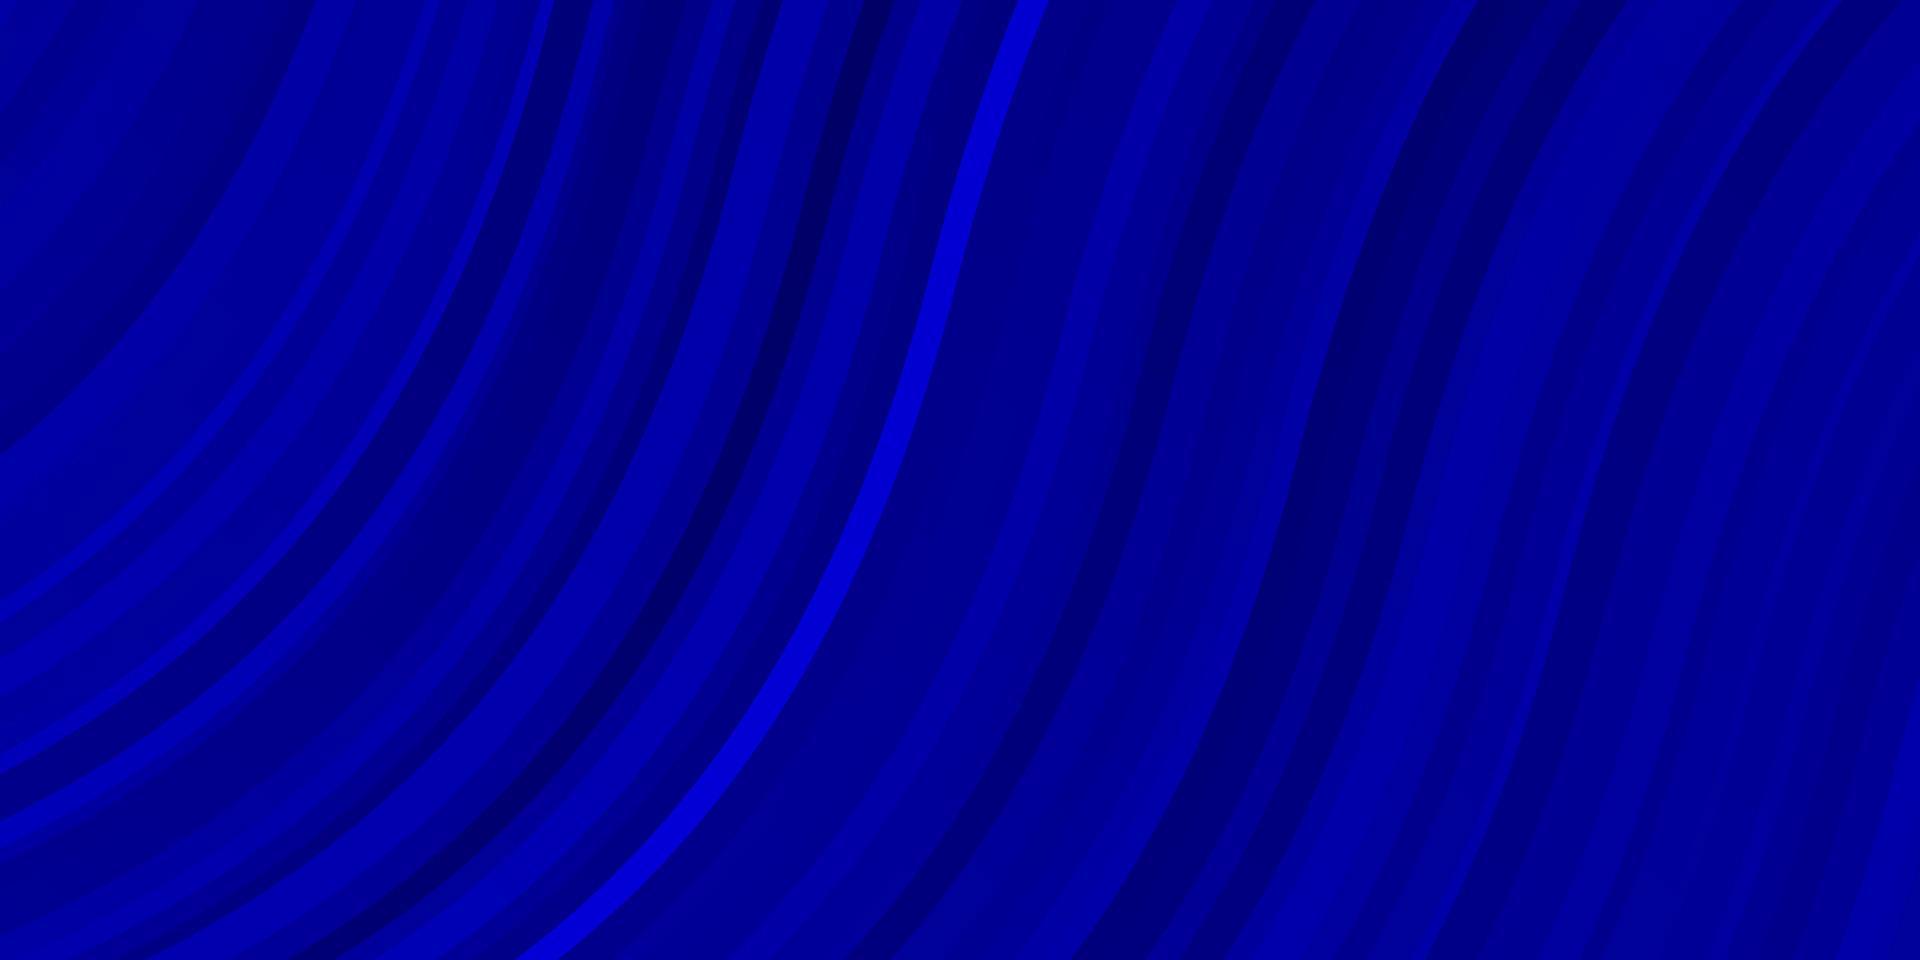 textura vector azul escuro com linhas irônicas.